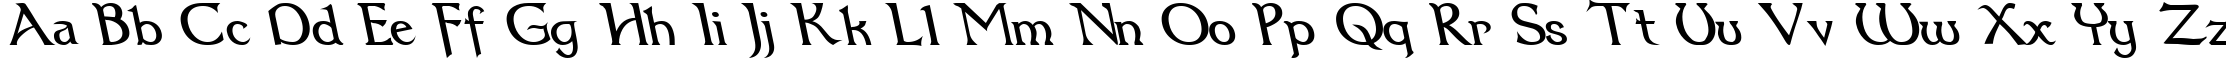 Пример написания английского алфавита шрифтом Dumbledor 3 Rev Italic